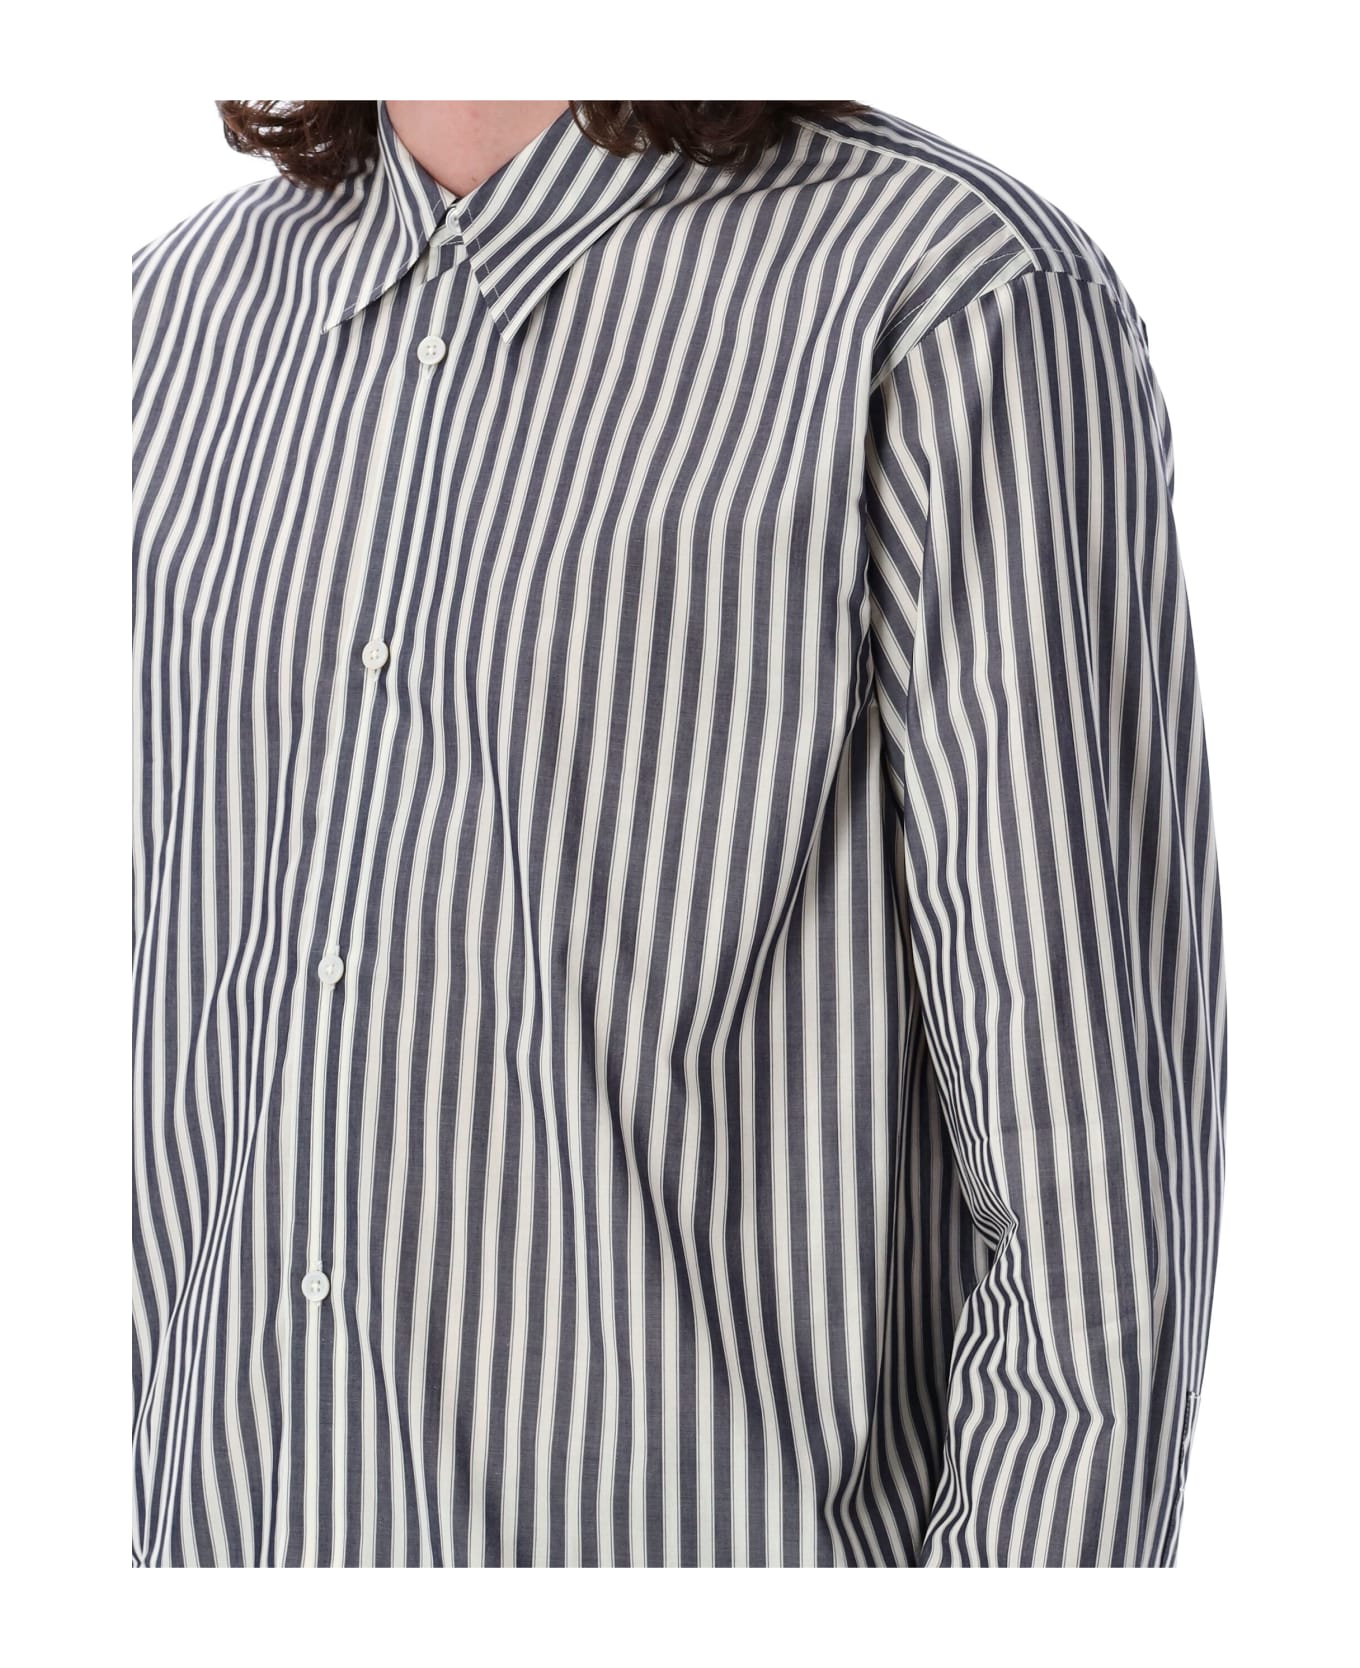 Studio Nicholson Over Stripes Shirt - NAVY CREAM シャツ